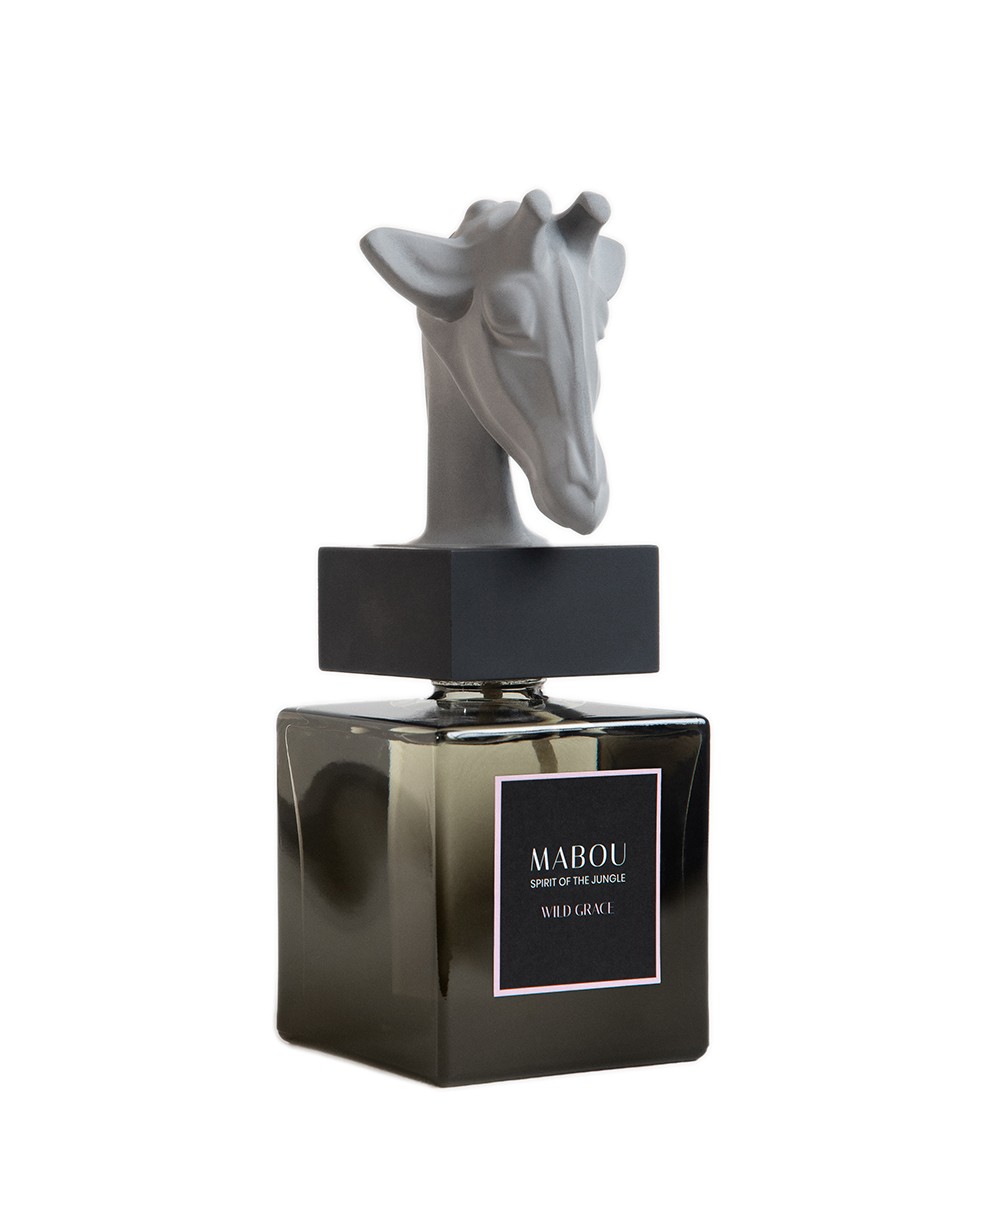 Produktbild der Duftskulptur Giraffe Wild Grace von Mabou – im RAUM concept store